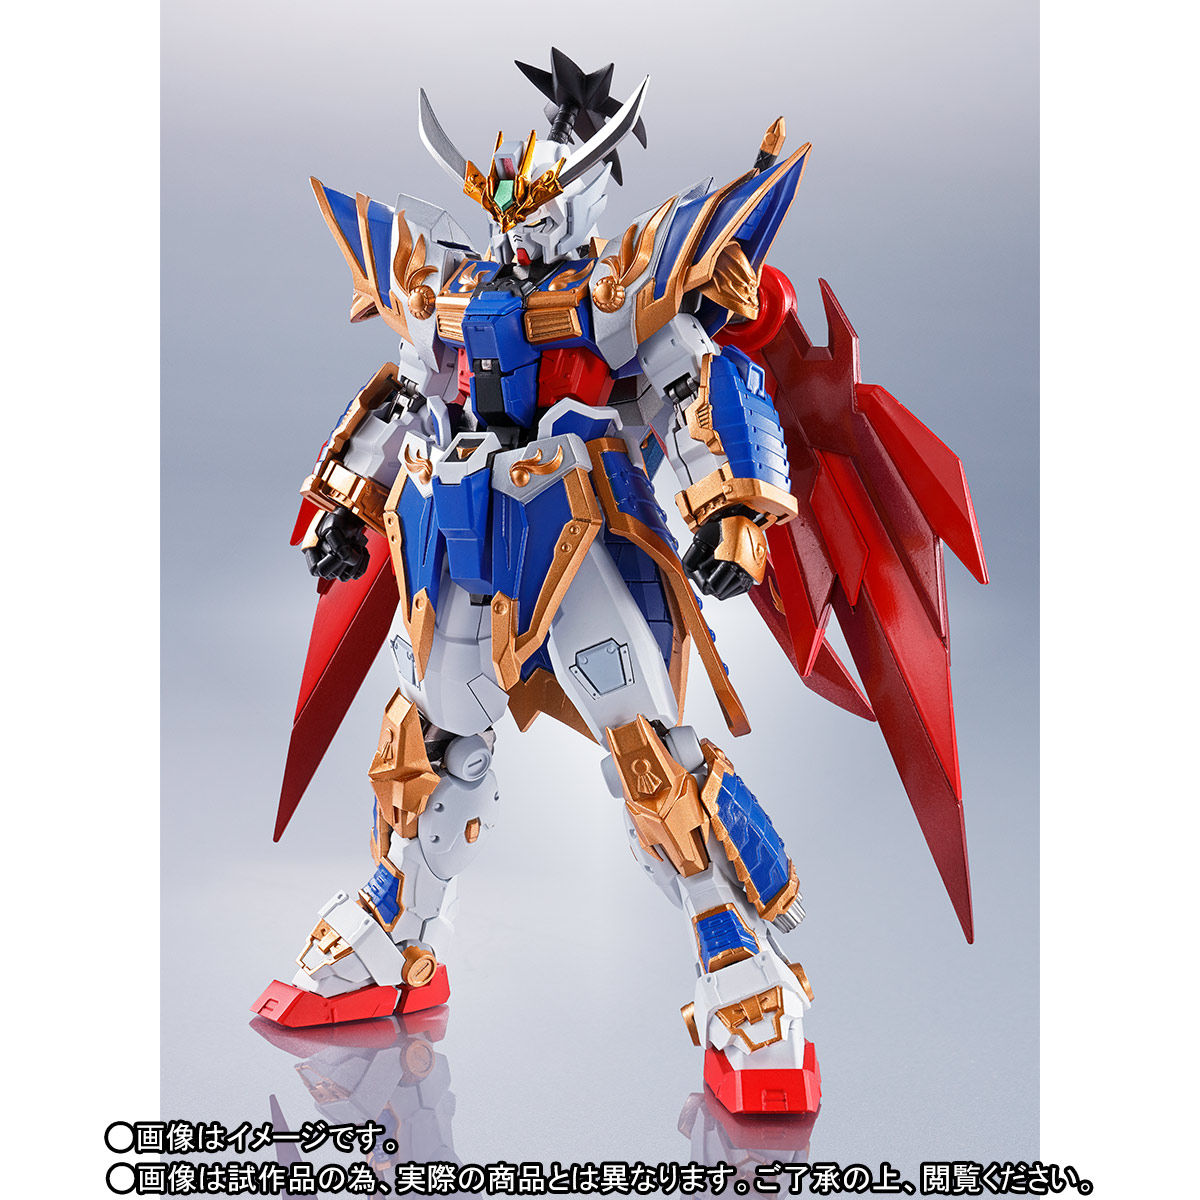 Metal Robot Spirits(Side MS) Liu Bei Gundam(Real Type Ver.)